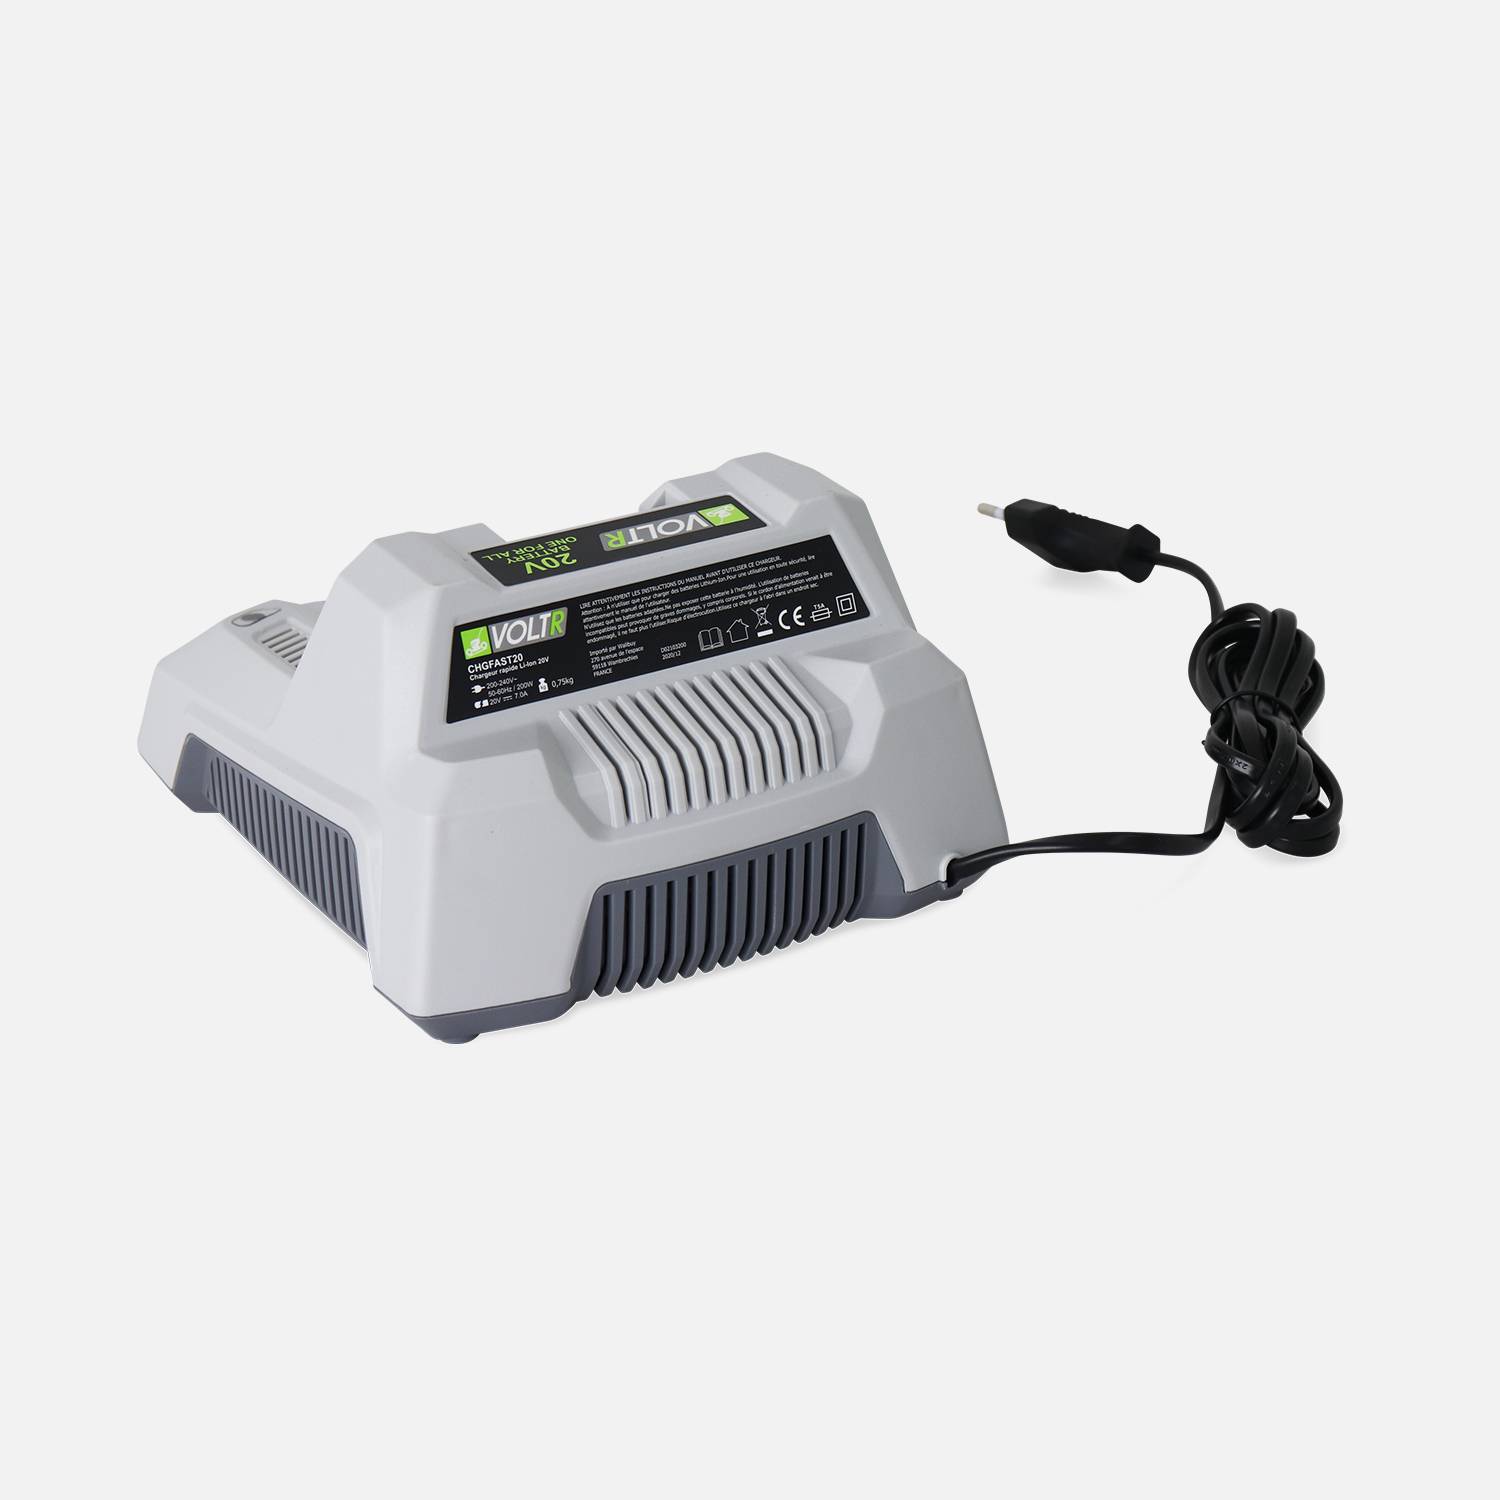 VOLTR 20V - Carregador ultrarrápido - Carregador de 1h para bateria de ferramentas sem fios VOLTR 20V, base com luz indicadora Photo2